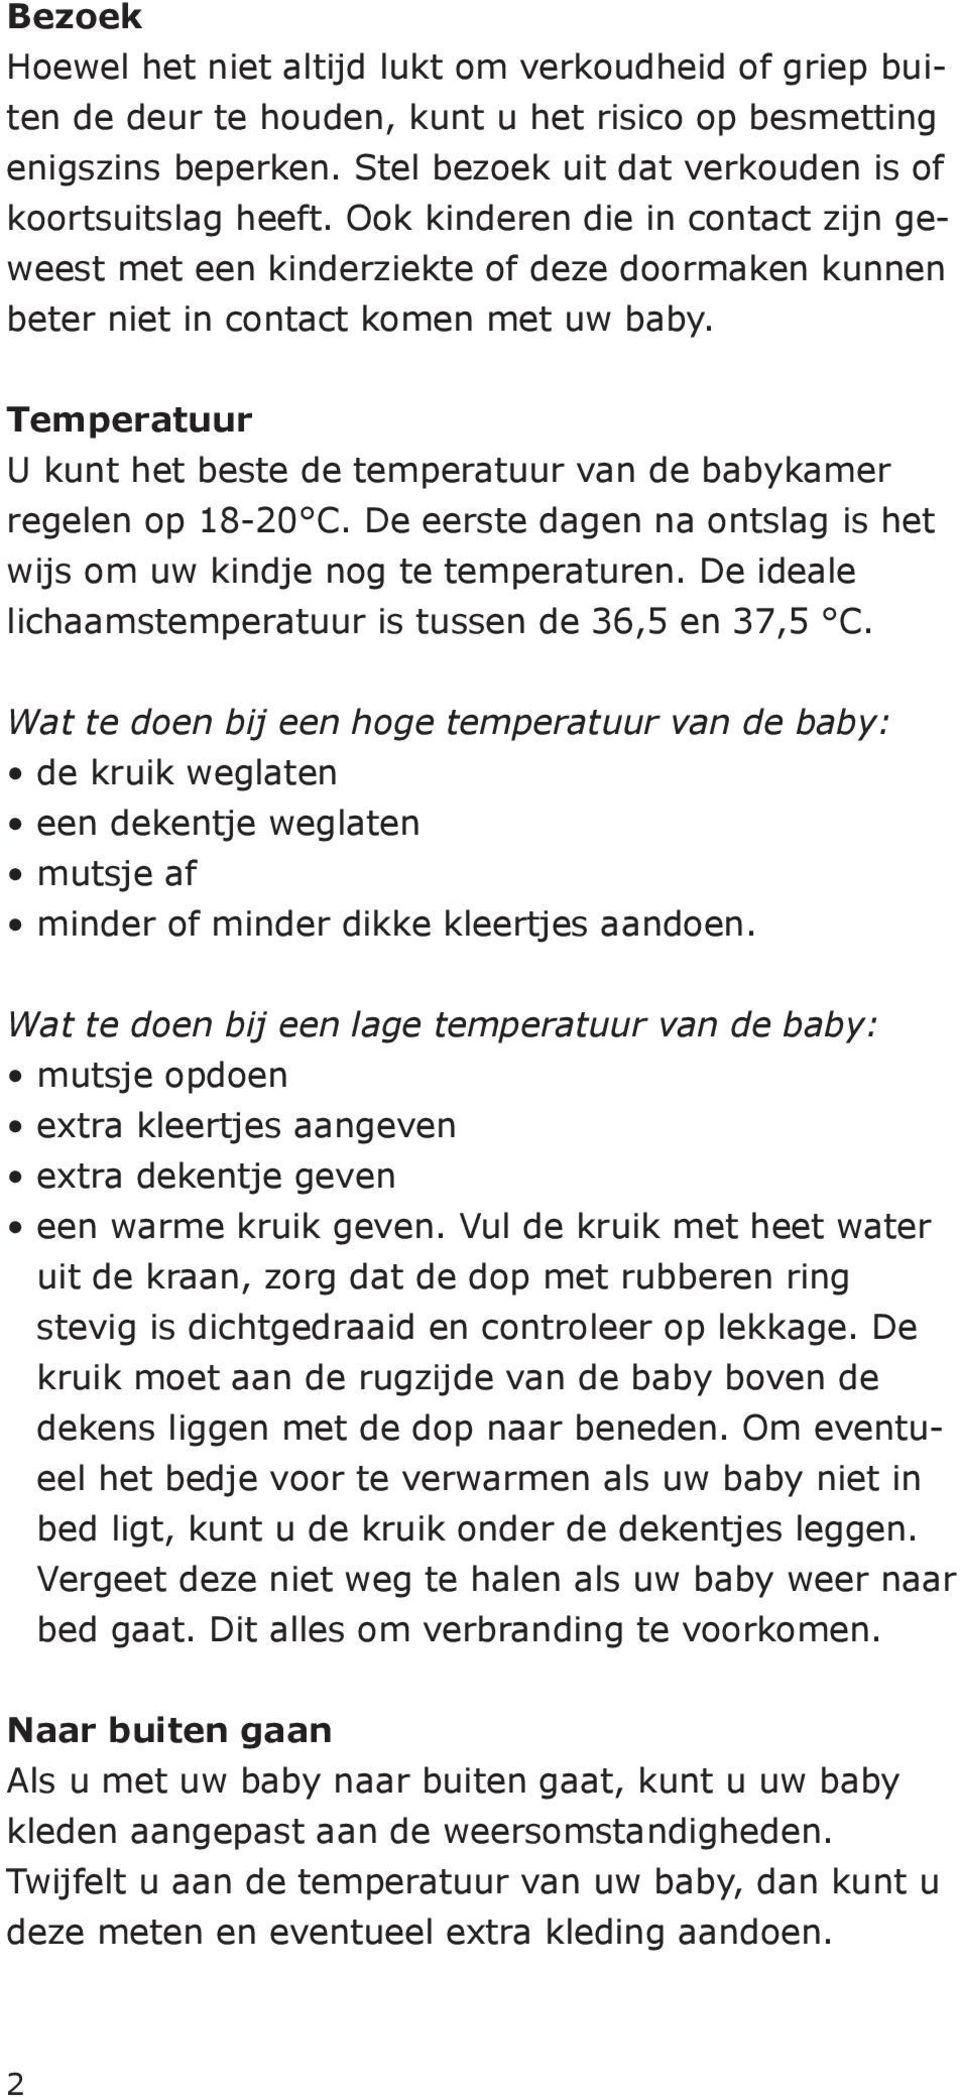 Temperatuur U kunt het beste de temperatuur van de babykamer regelen op 18-20 C. De eerste dagen na ontslag is het wijs om uw kindje nog te temperaturen.